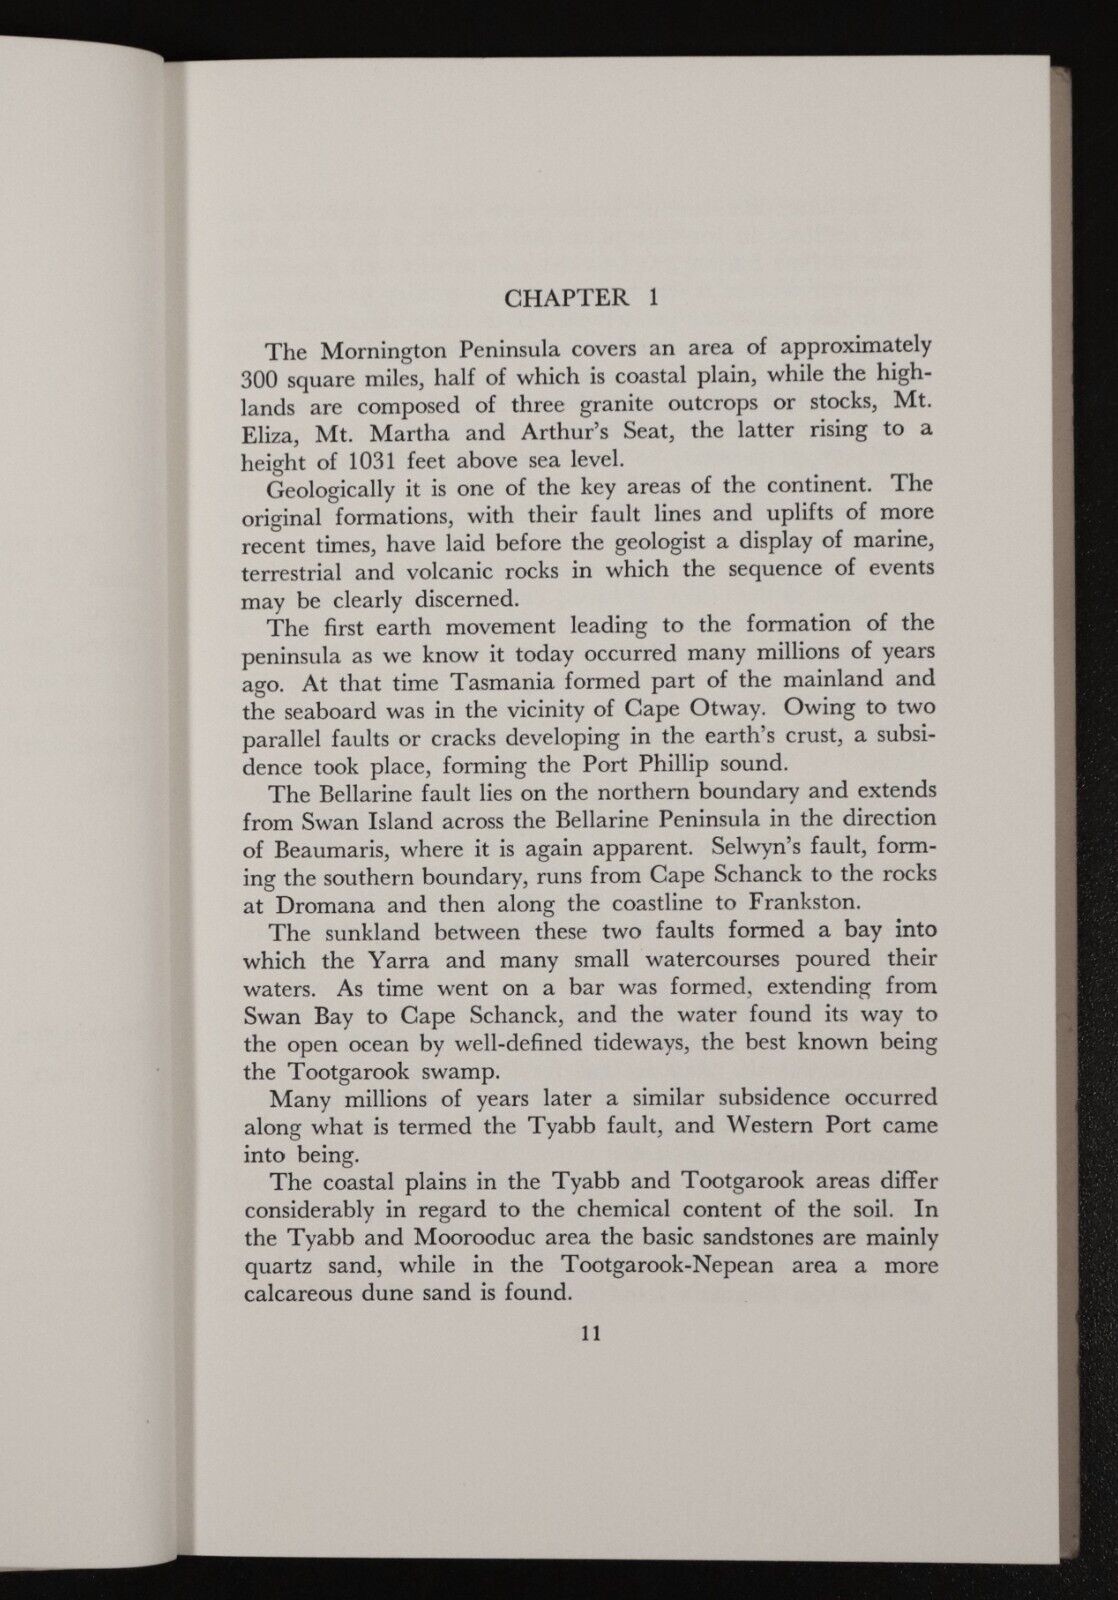 1961 Early History Of The Mornington Peninsula Australian Local History Book